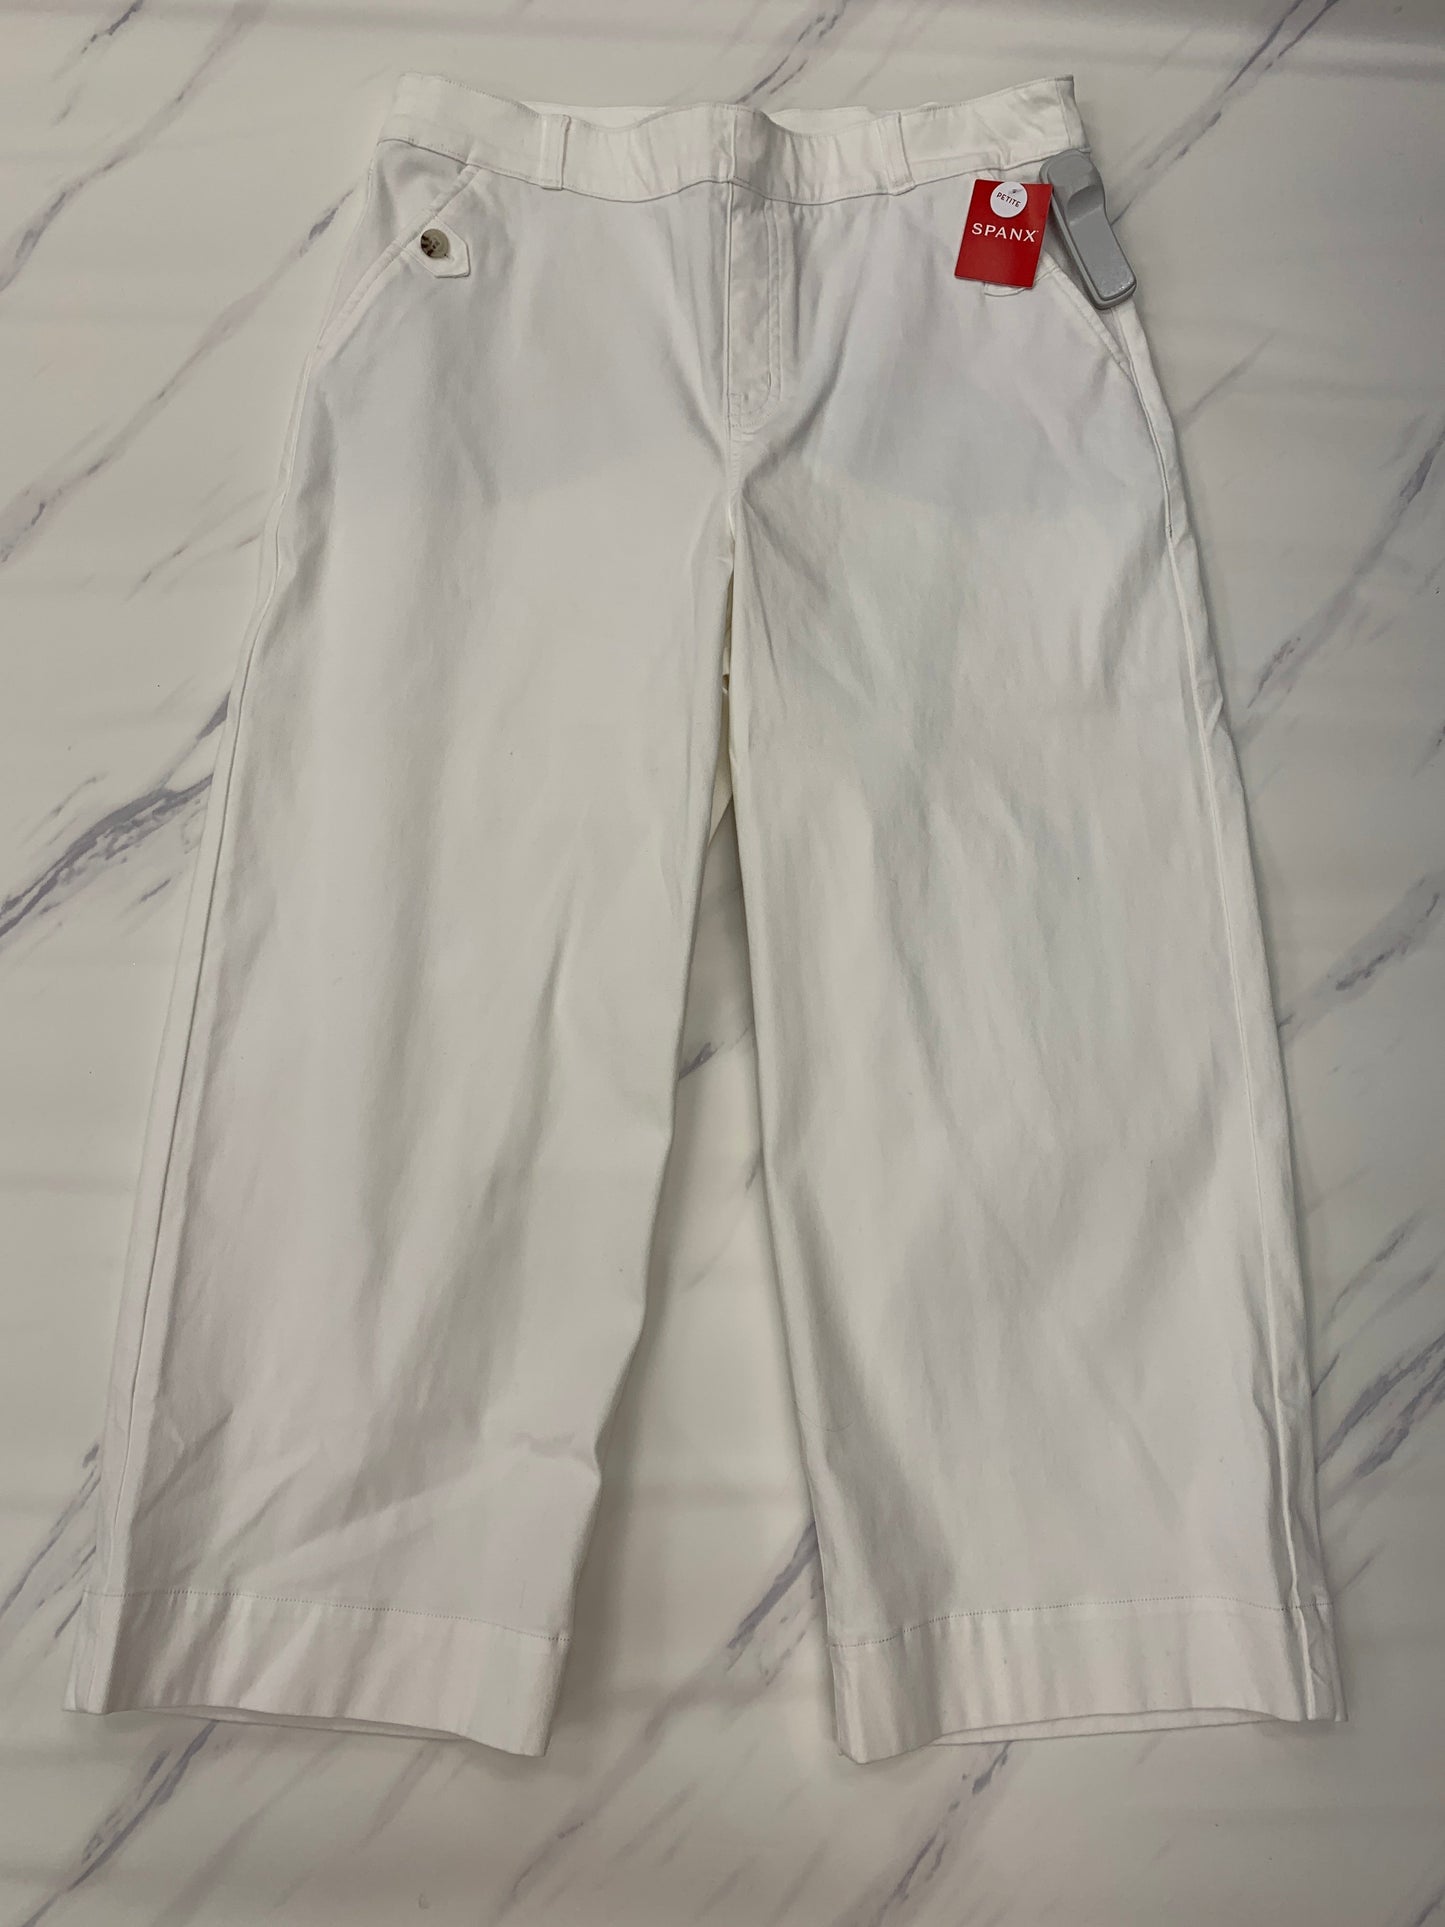 White Pants Cargo & Utility Spanx, Size Xl